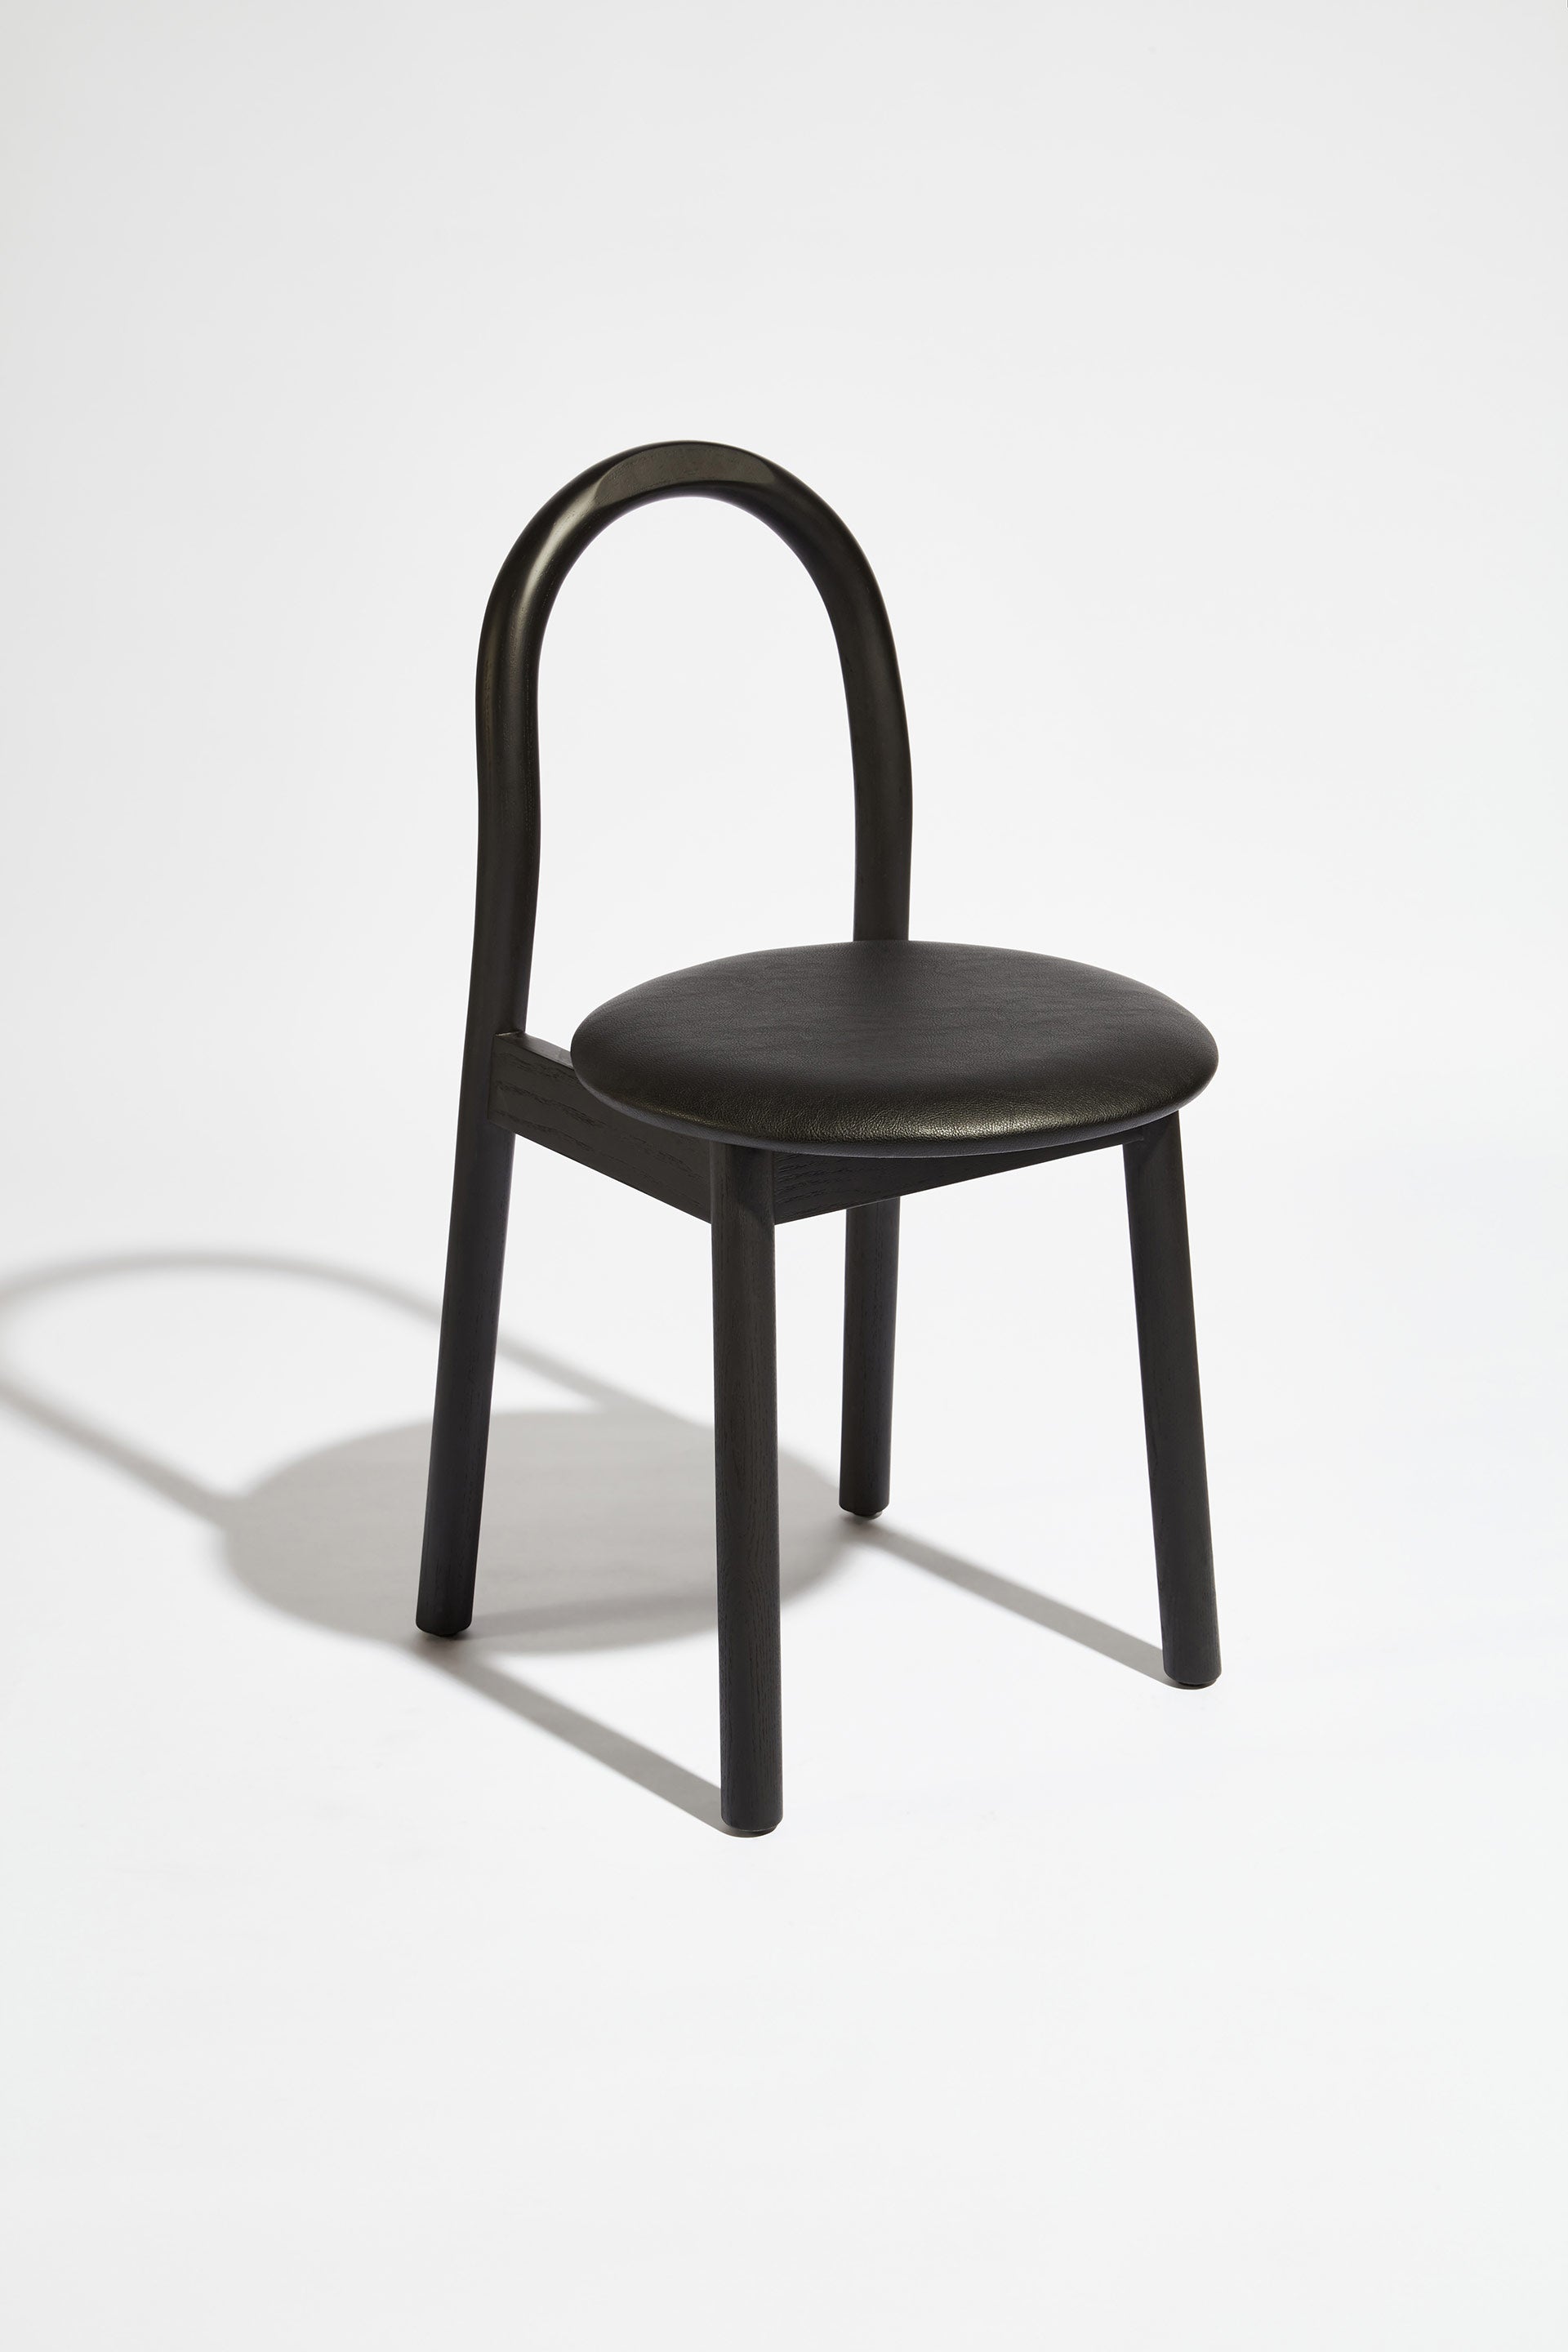 Bobby Chair Upholstered | Black Timber Wooden Dining Chair | Daniel Tucker | DesignByThem ** HF2 Lariat - 006 Black / Black Stained Ash